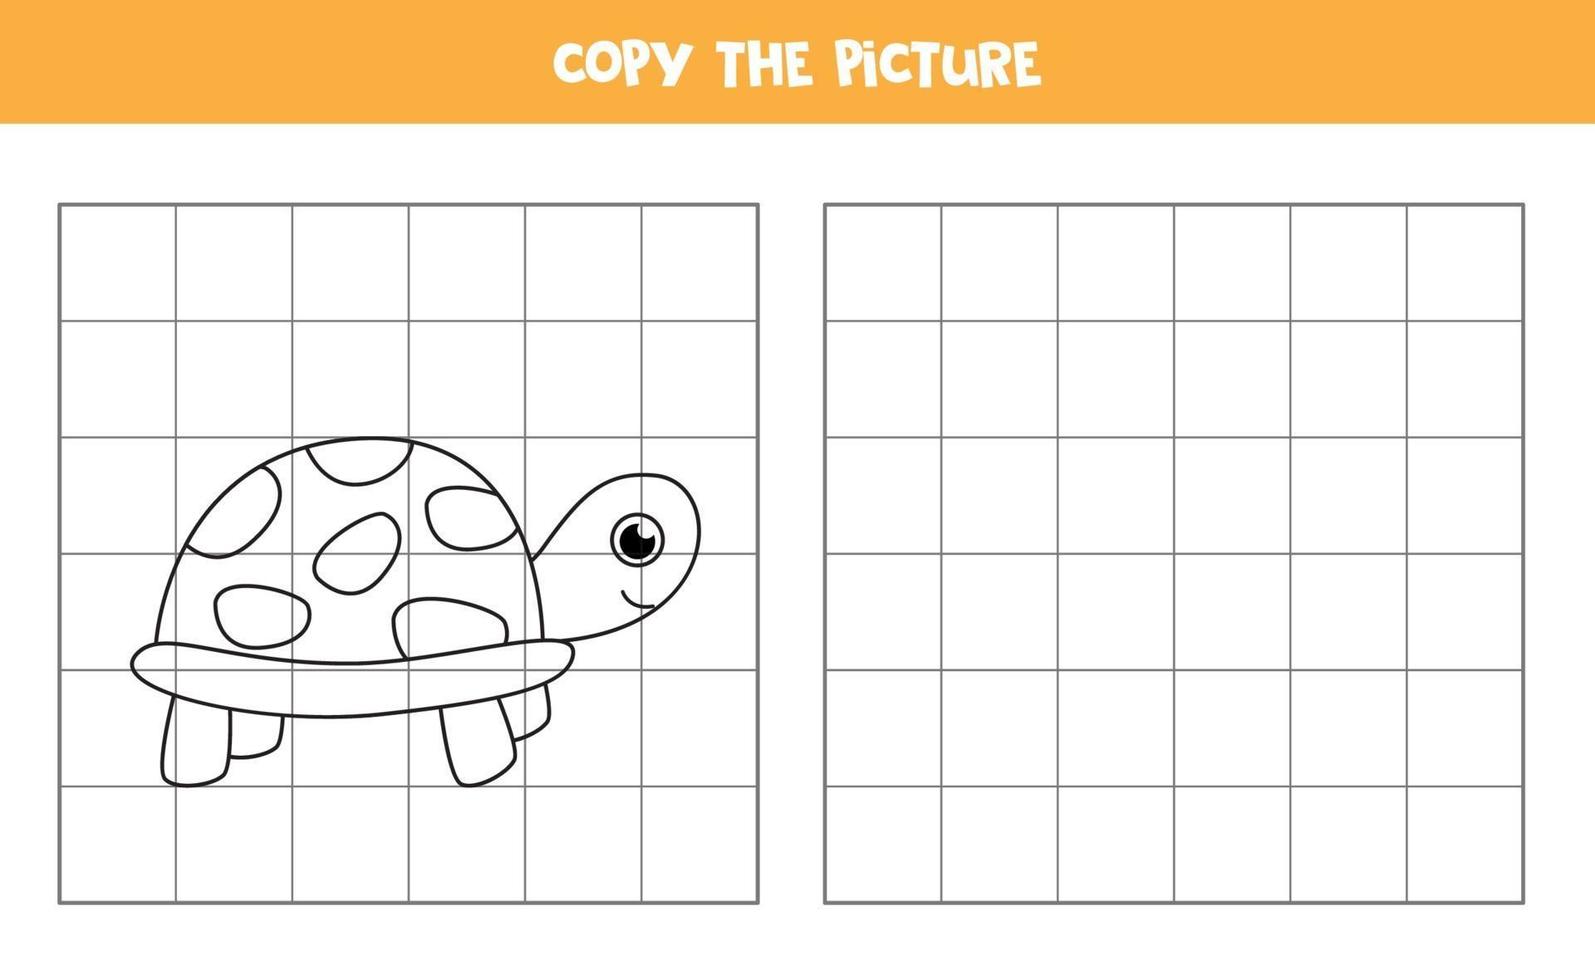 copiar a imagem de uma tartaruga bonita. jogo educativo para crianças. vetor